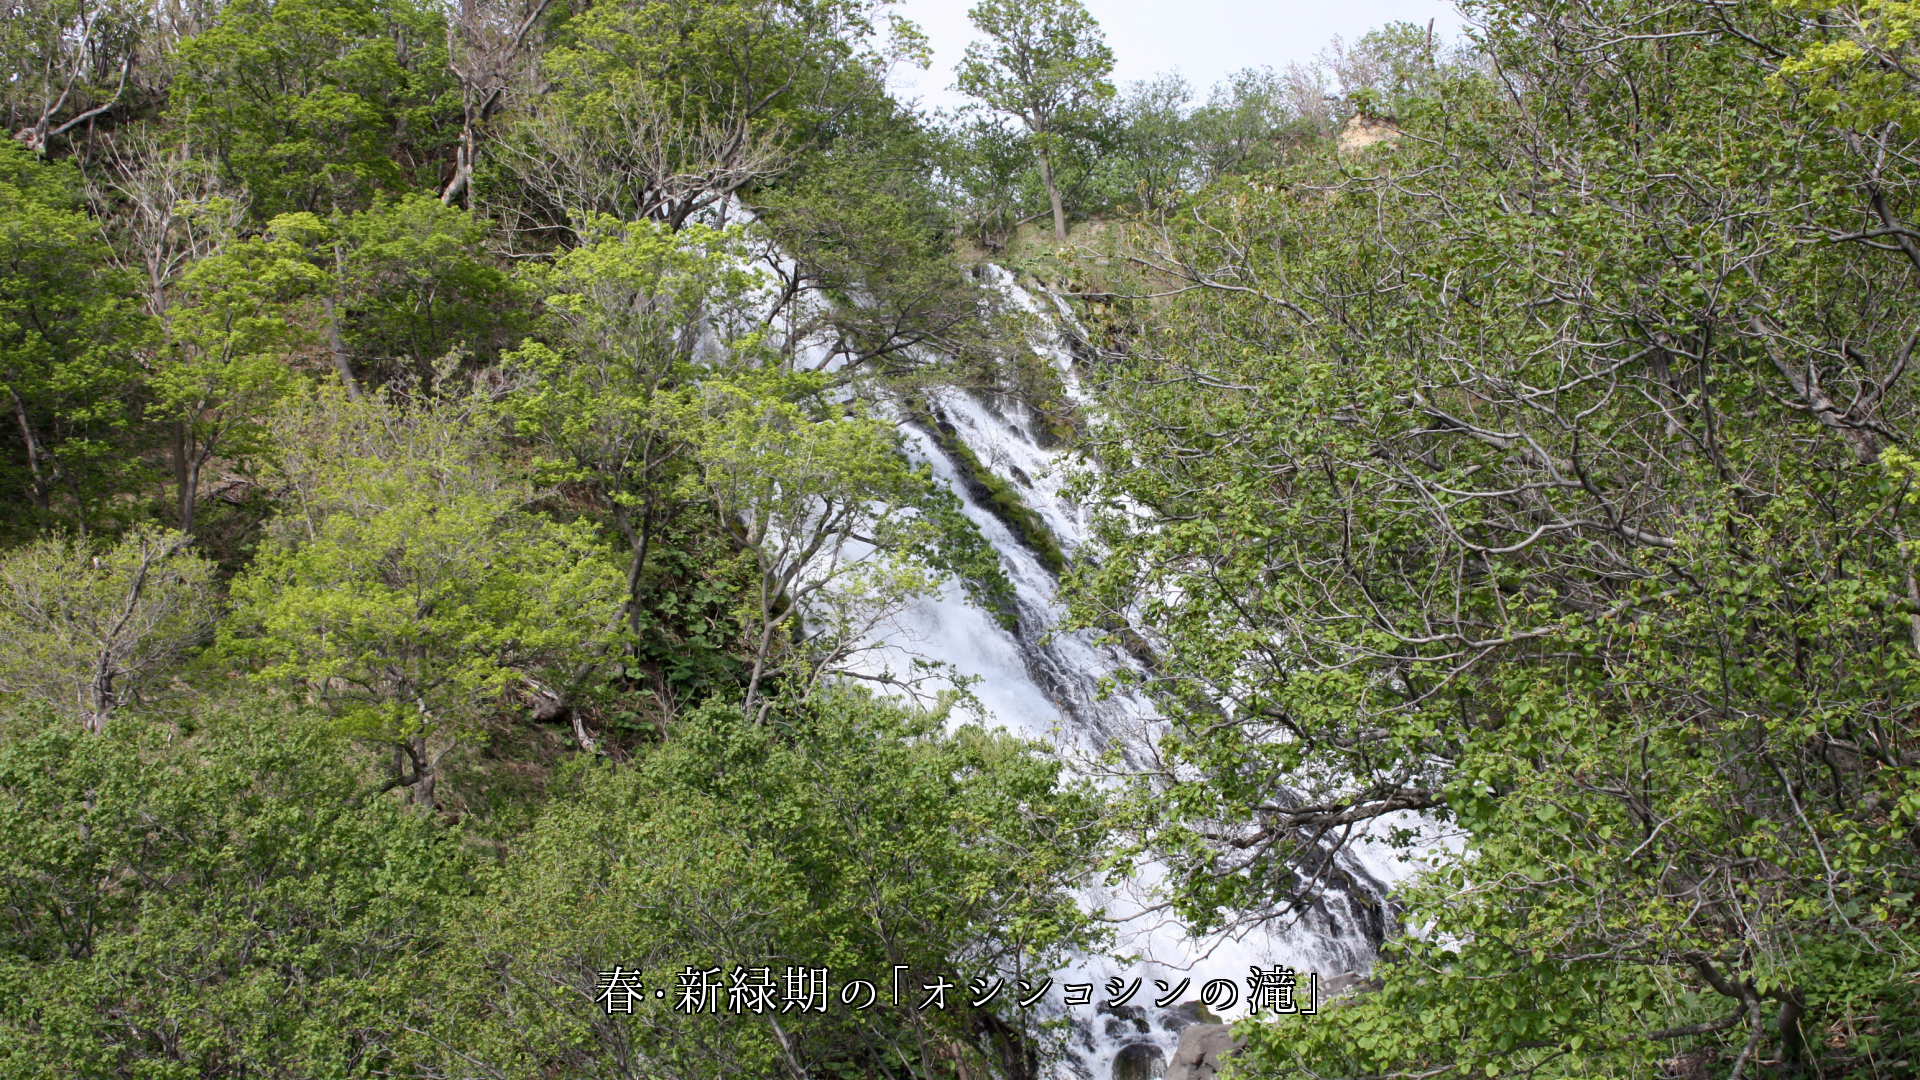 「オシンコシンの滝」の四季　森や空の色は変わる　だが　滝は流れ落ち続ける